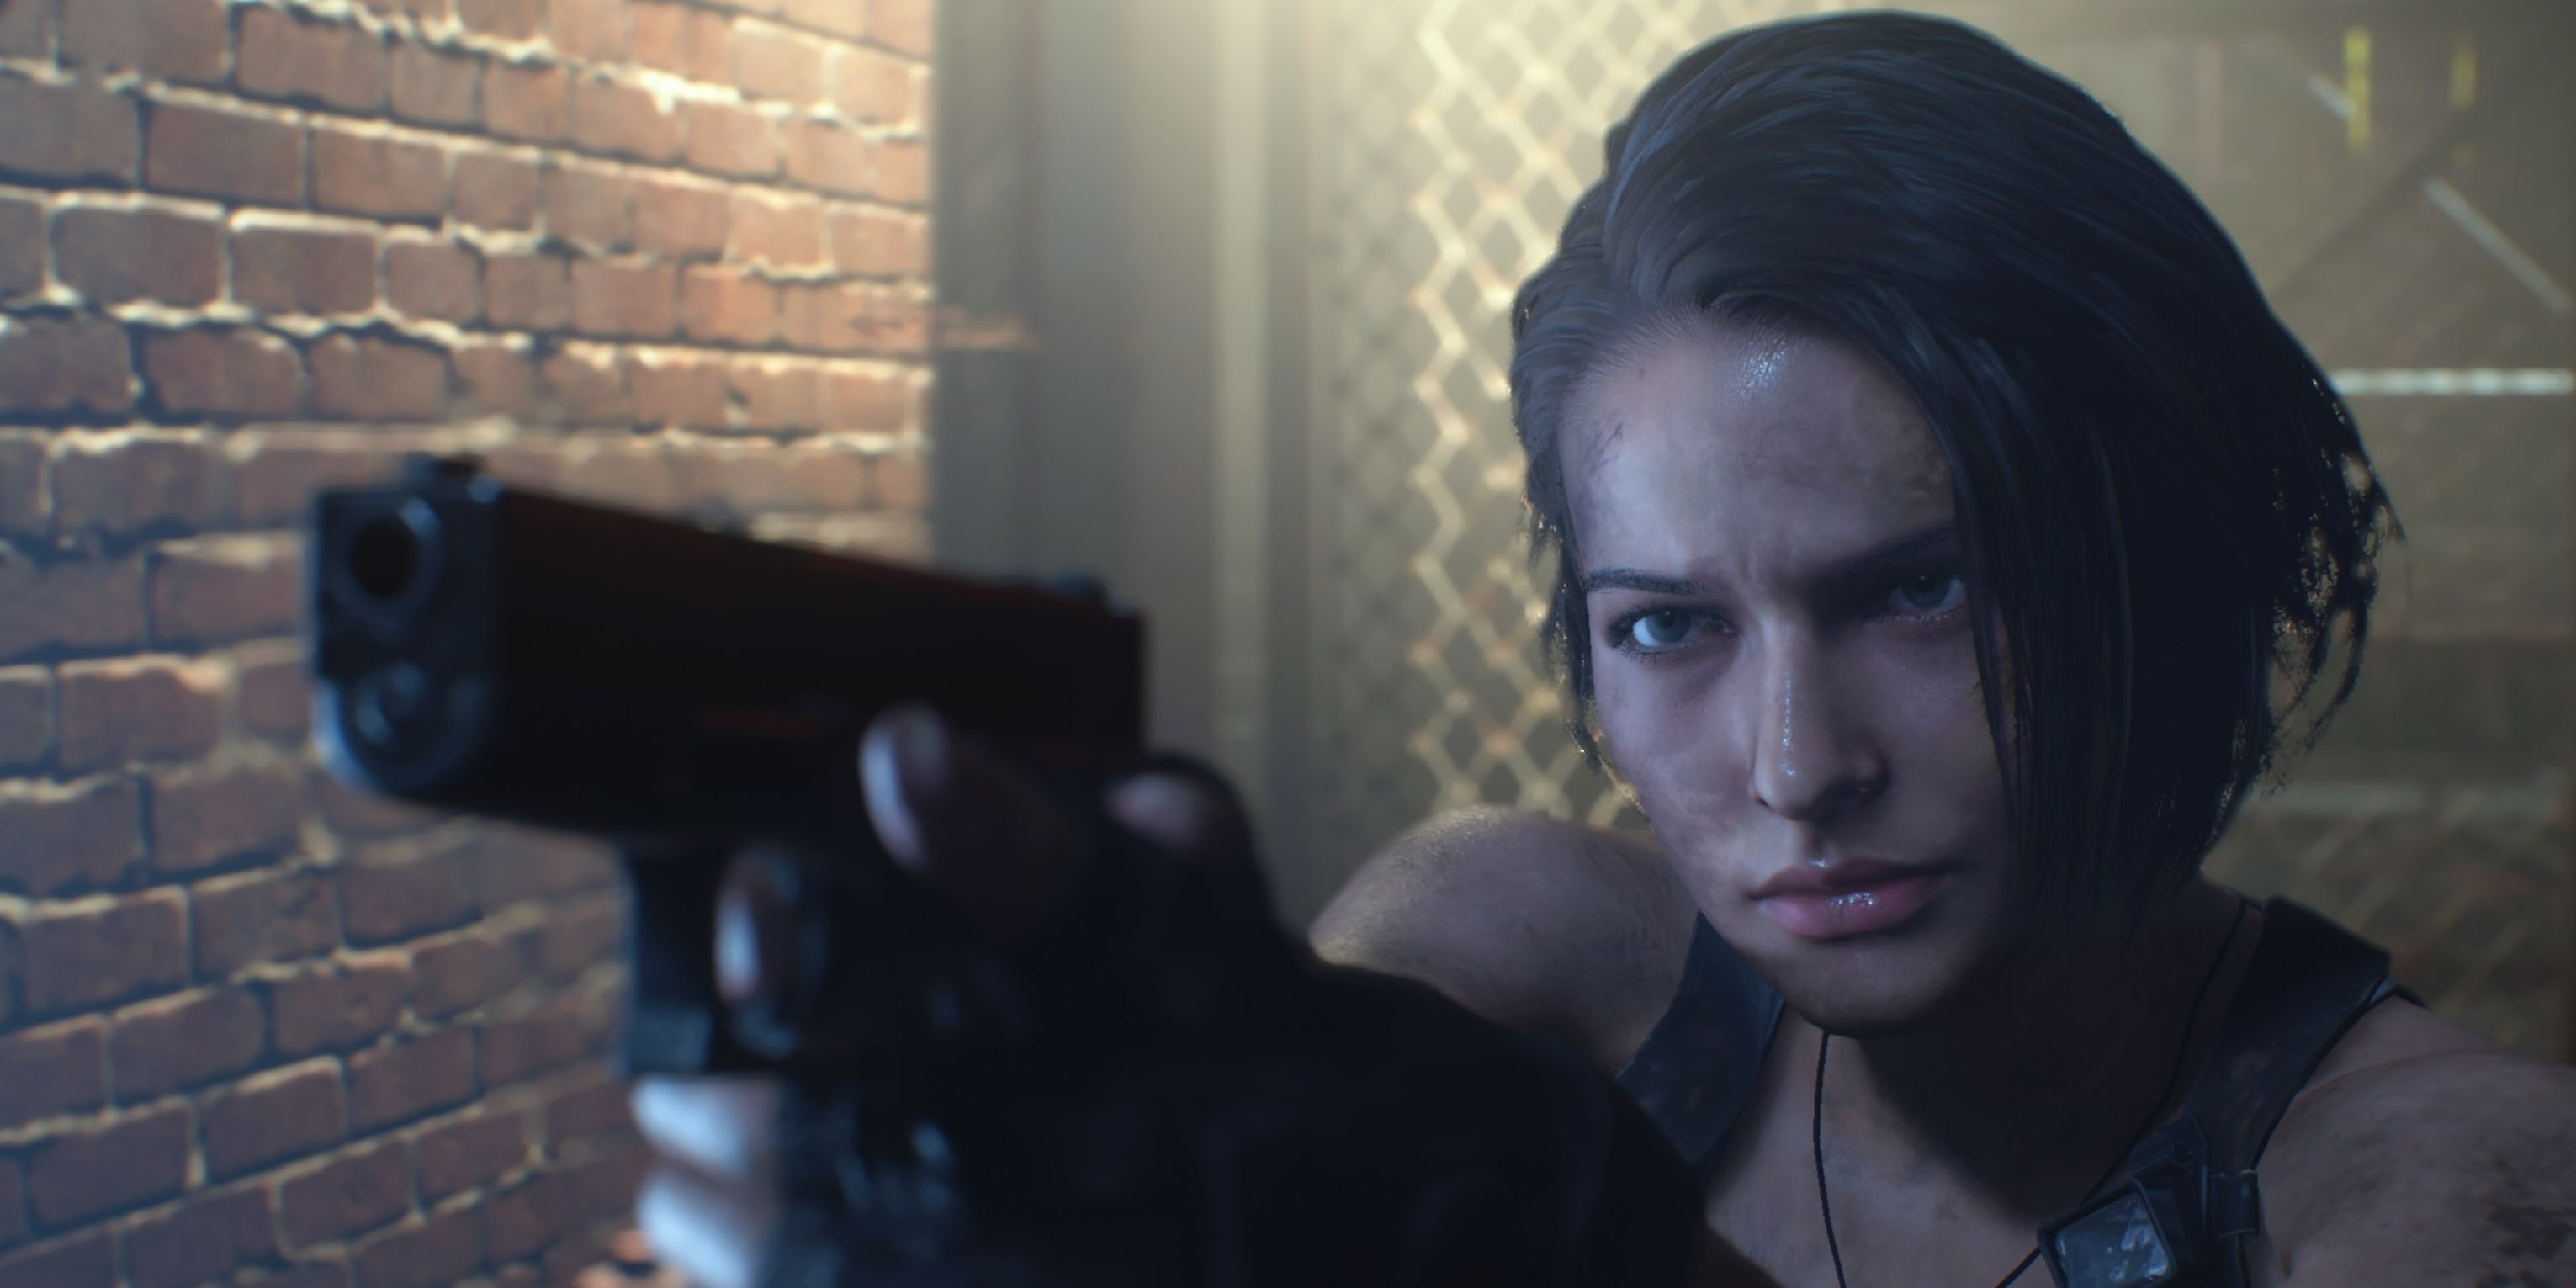 Jill aiming a gun